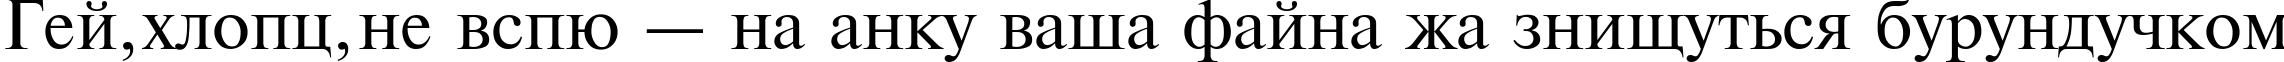 Пример написания шрифтом TimesET текста на украинском